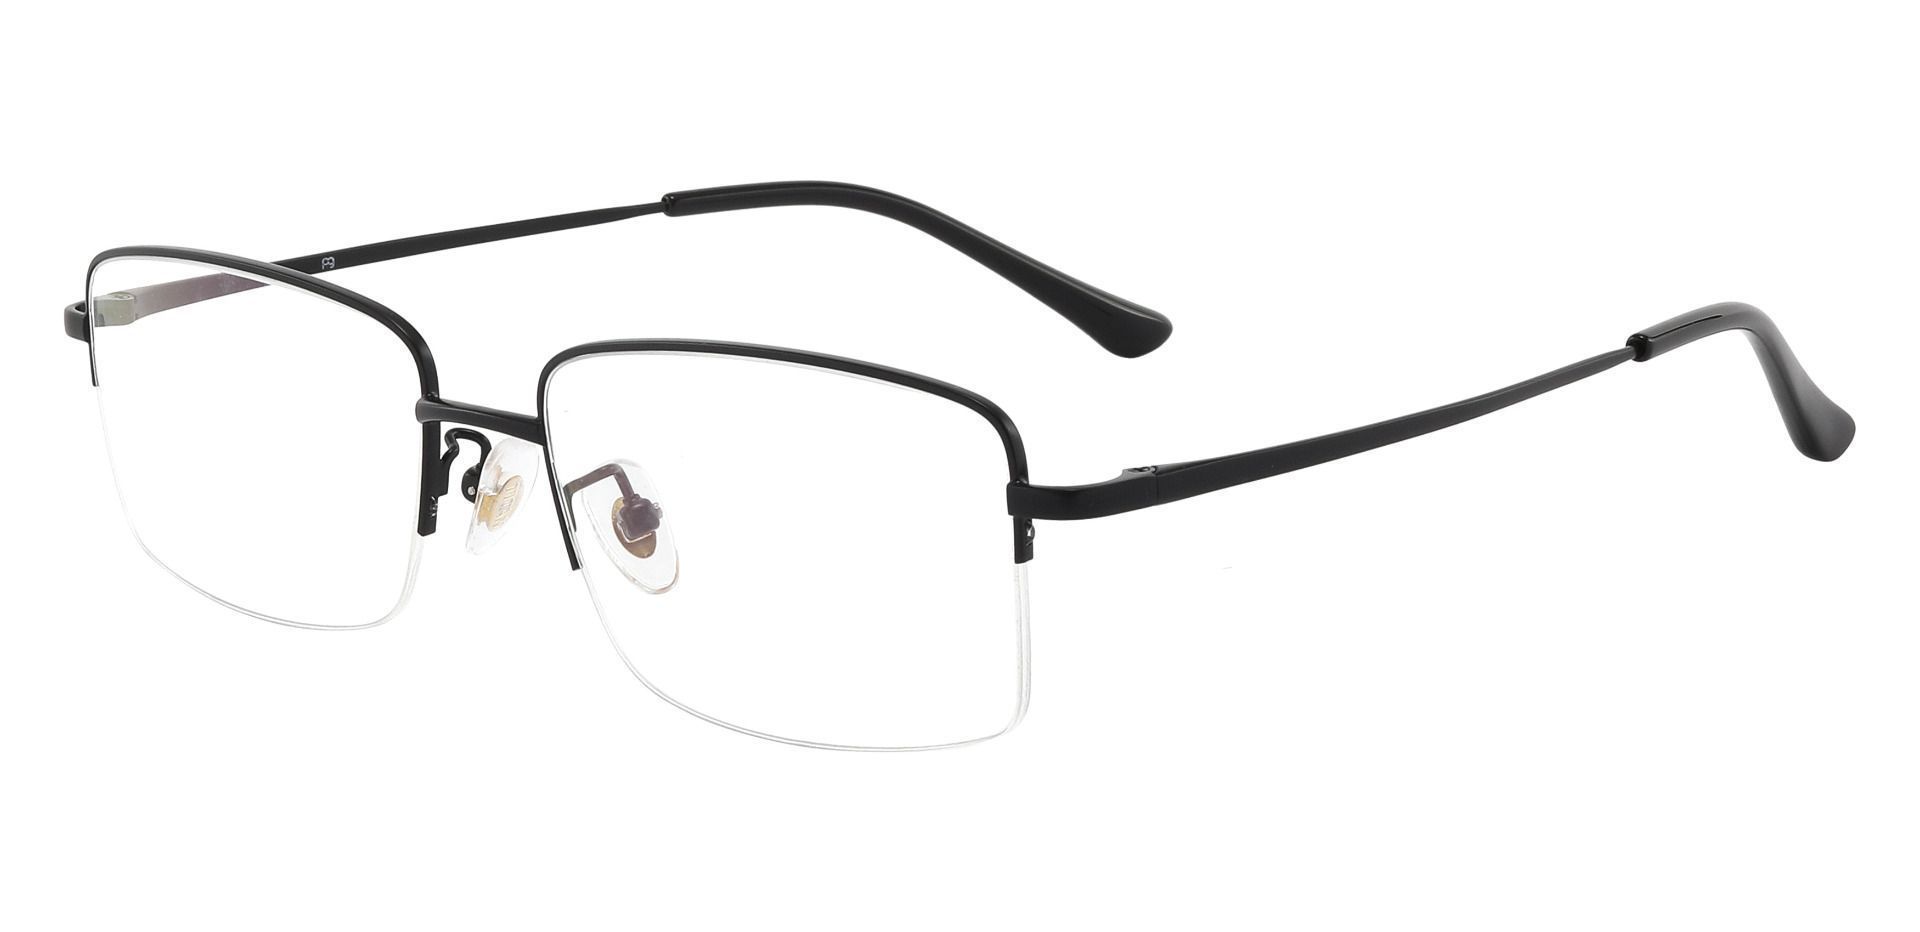 Bellmont Rectangle Lined Bifocal Glasses - Black